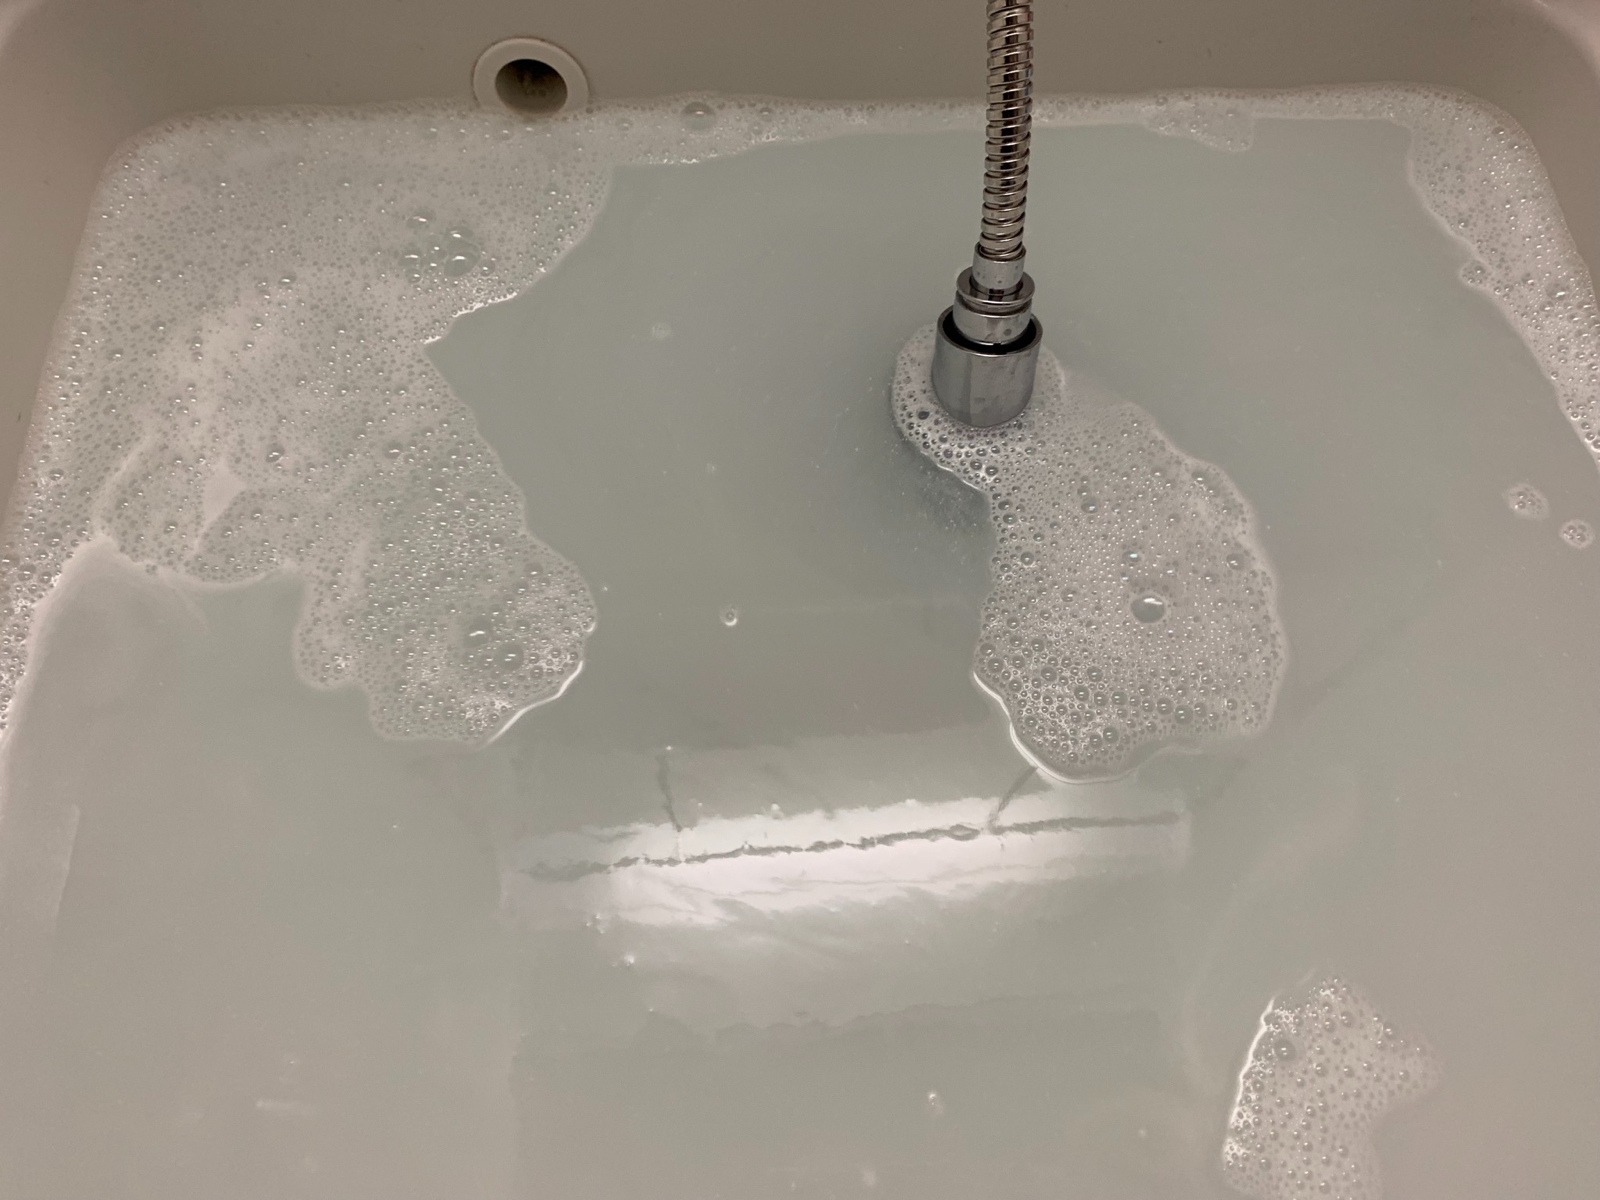 オキシクリーンで洗面台を掃除 つけ置きしただけでこんなにも真っ白に 黒カビや水垢を撃退